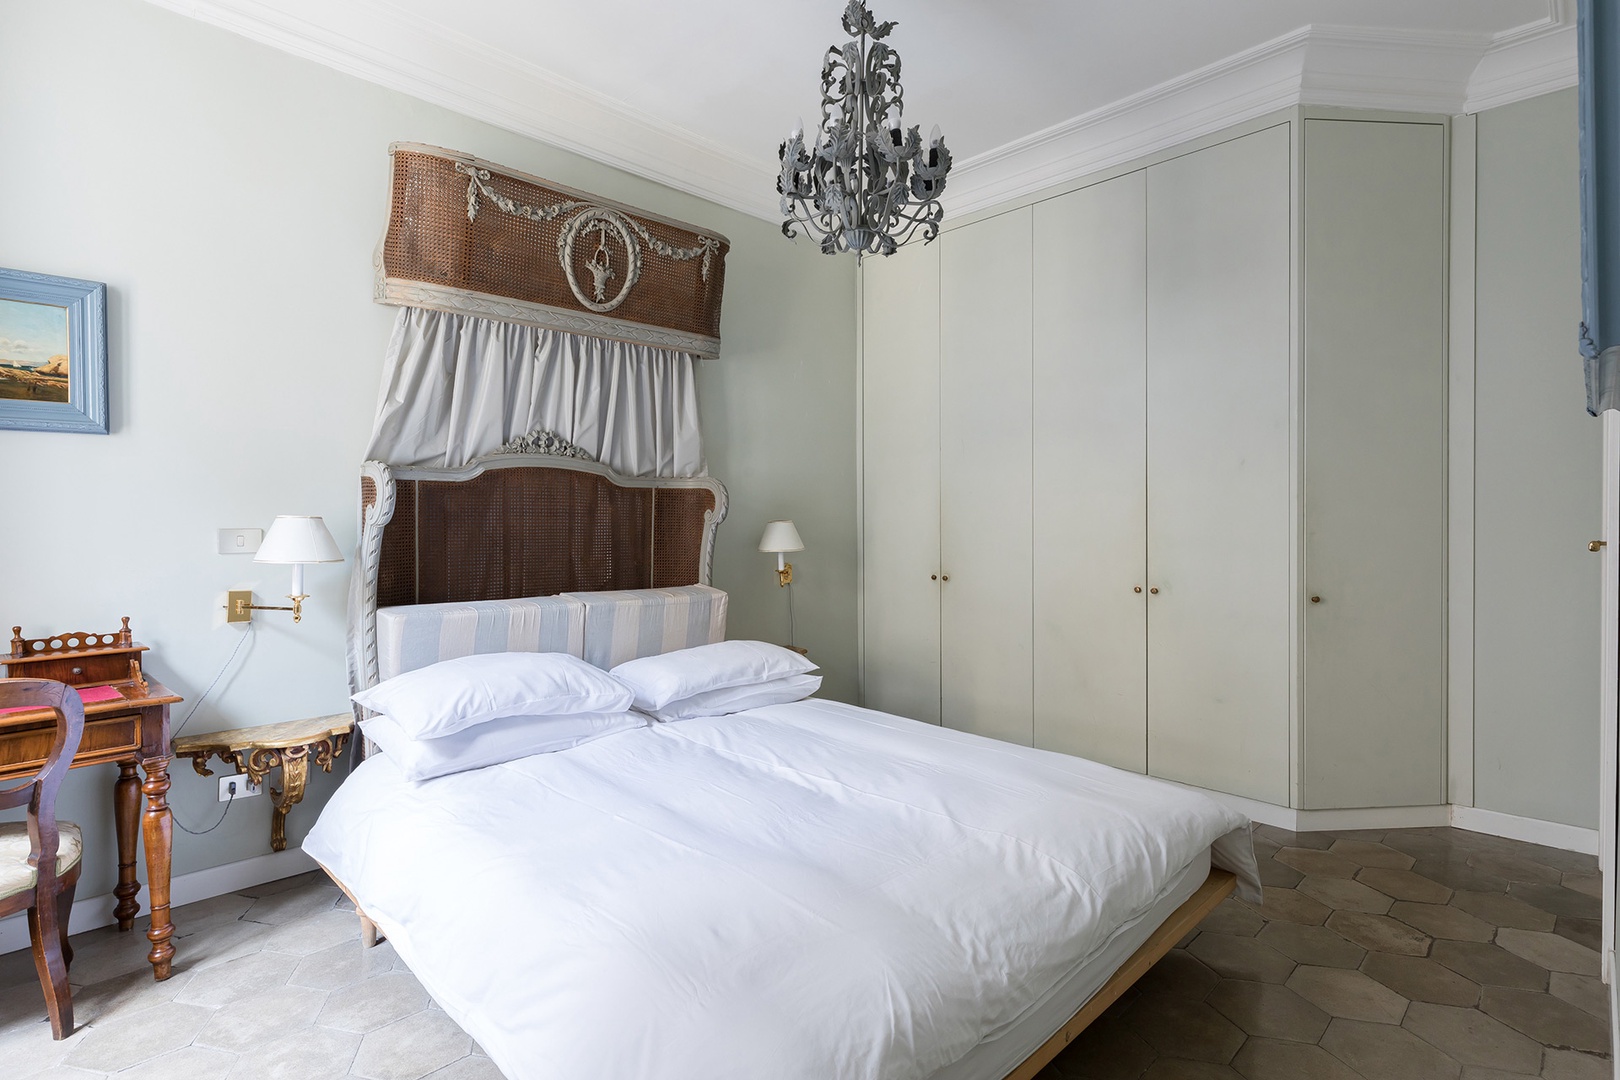 Beautiful antique wicker bedstead in bedroom 1 with an en suite bathroom